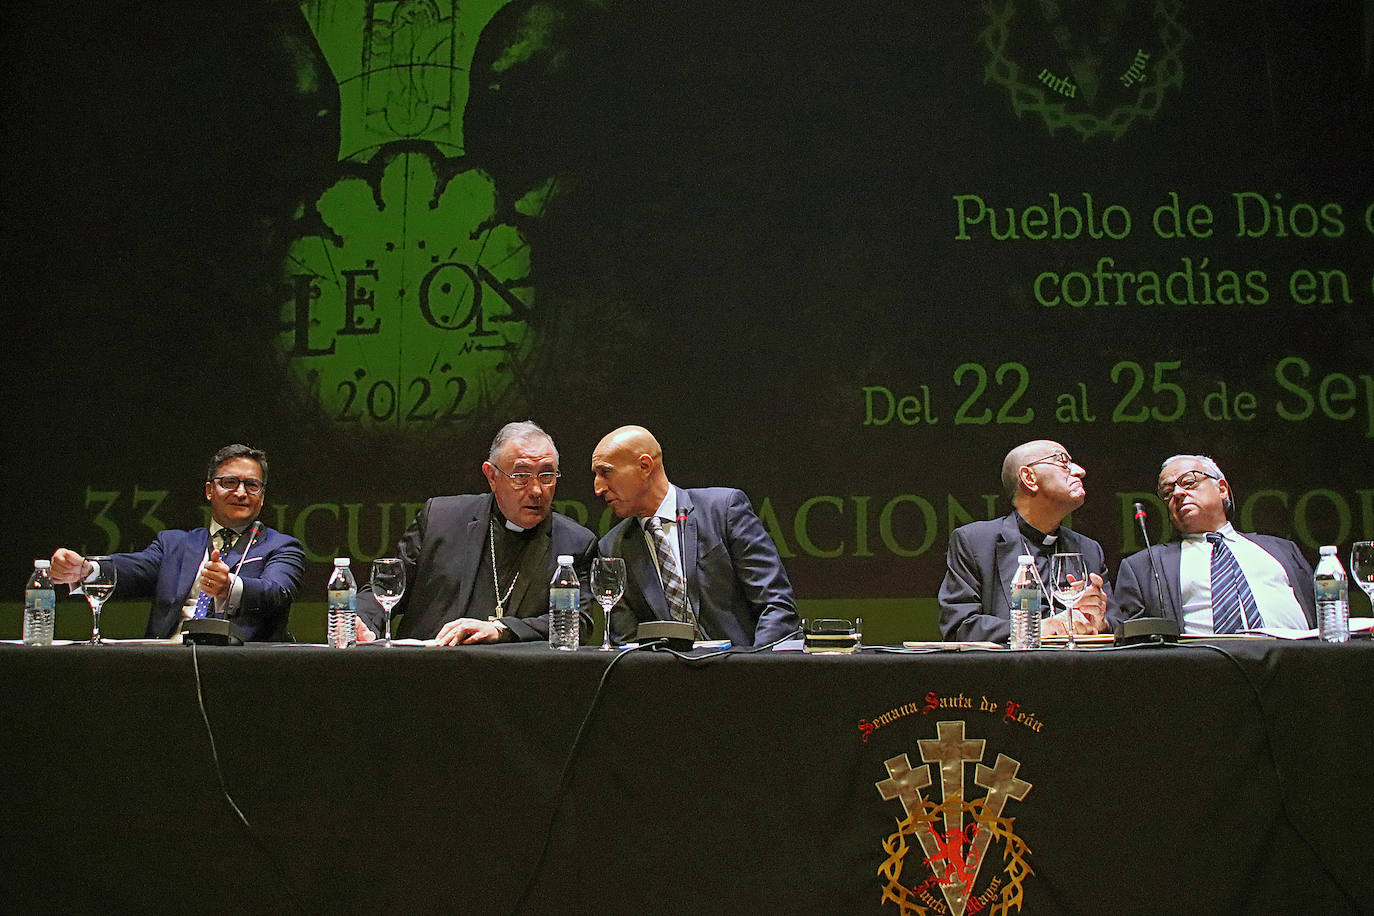 Inauguración del 33 Encuentro Nacional de Cofradías Penitenciales en el Auditorio de León. 